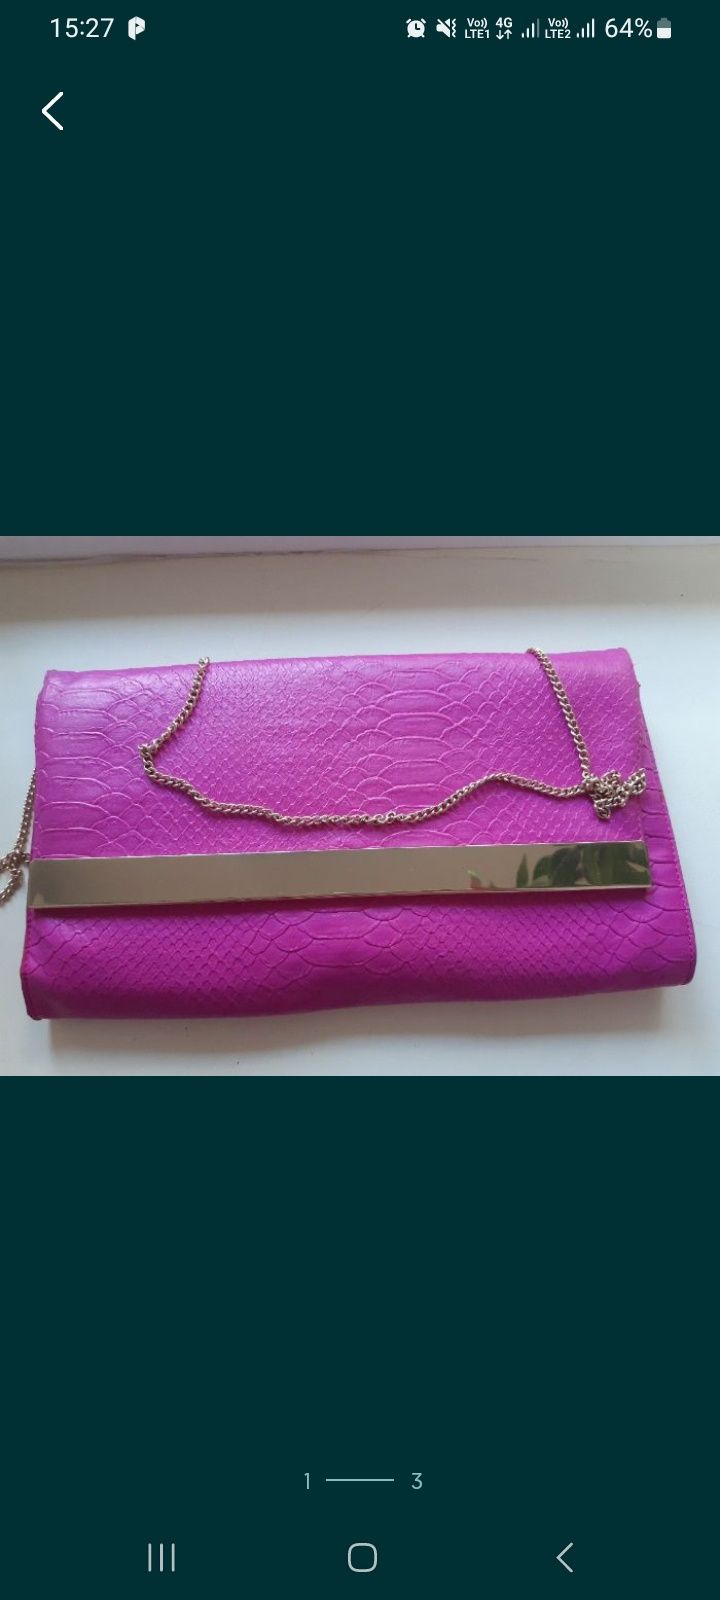 Продам фирменную яркую розовую сумку клатч New Look